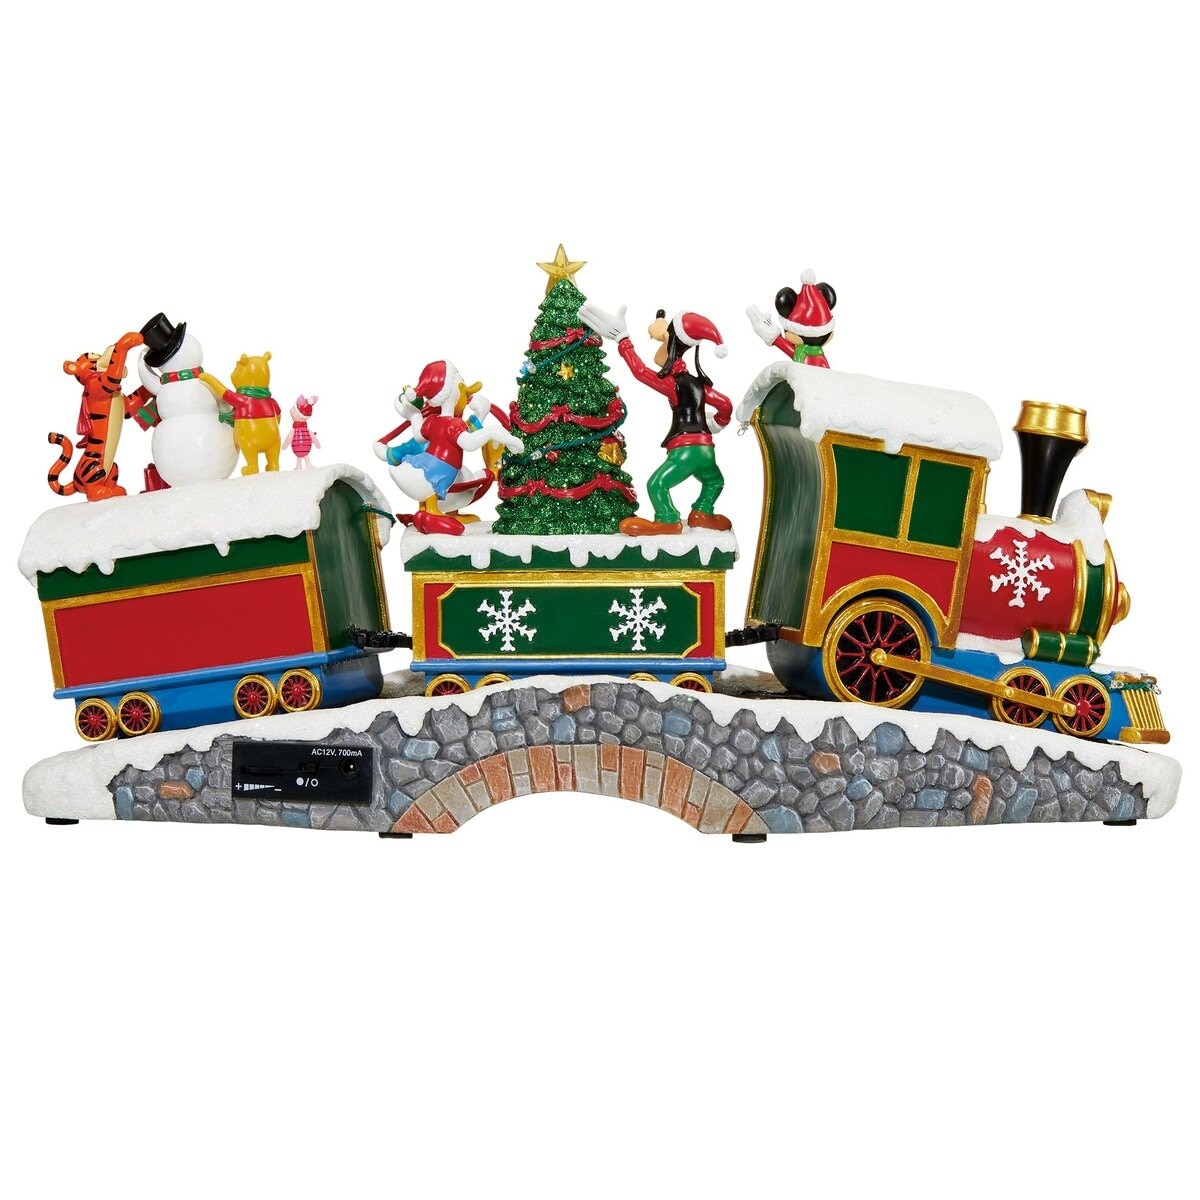 ディズニー クリスマス トレイン サウンド付き | Costco Japan